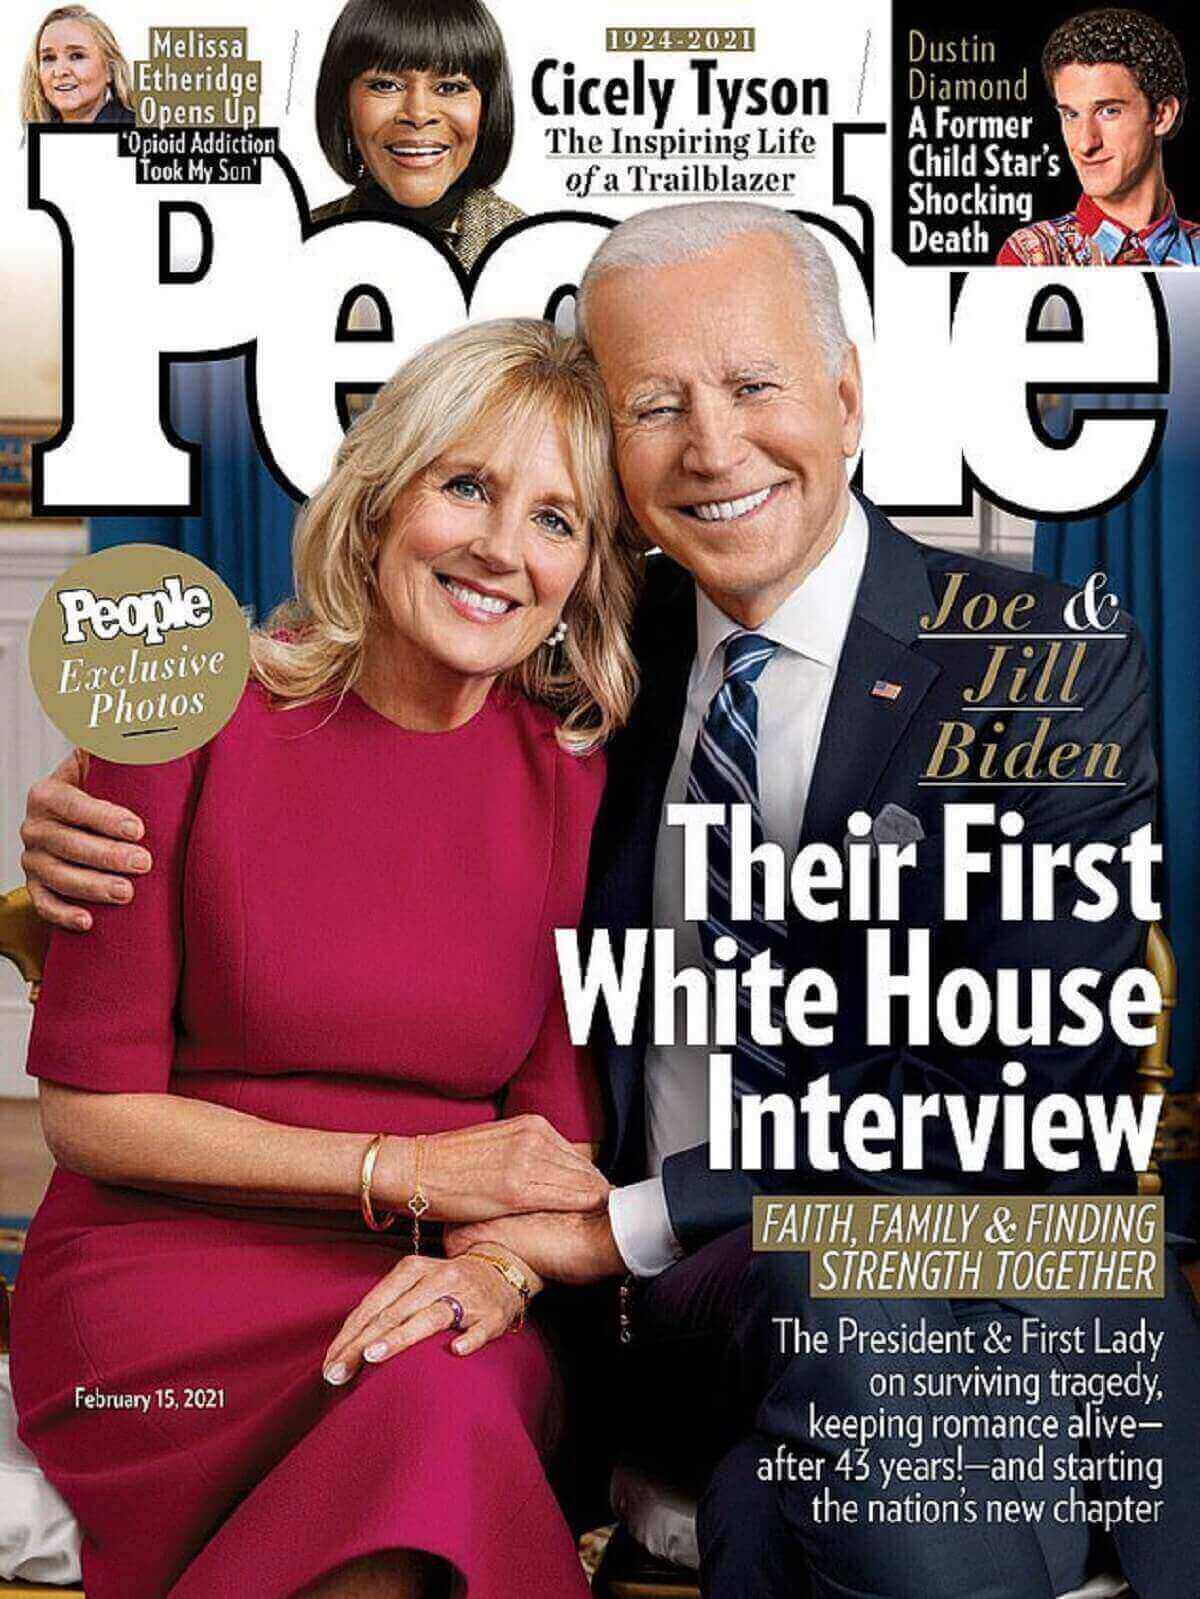 Biden a figuré aux côtés de son mari sur la couverture de People cette semaine et a accordé une interview au magazine Parents.